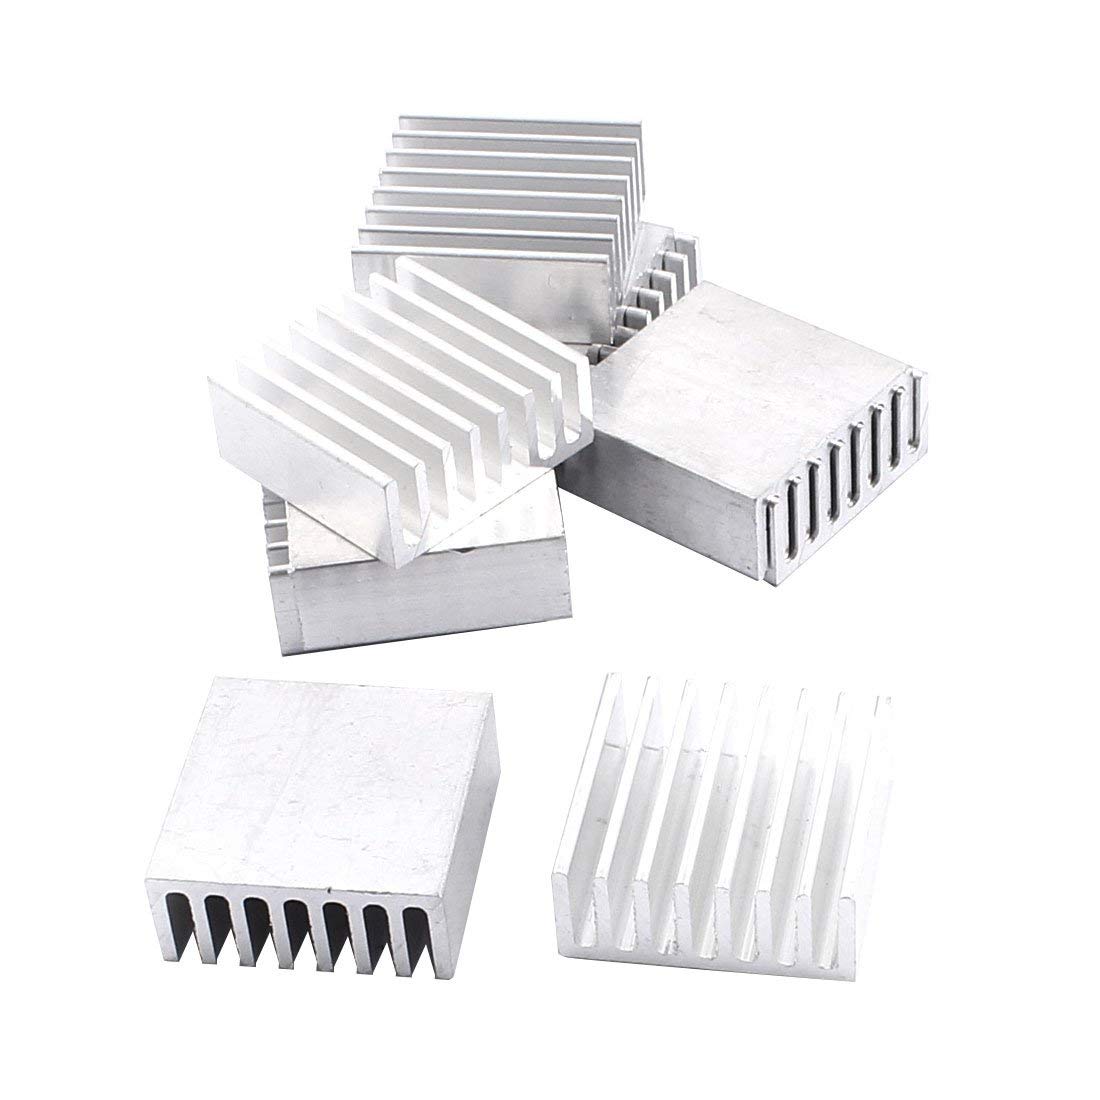 Aluminium Heatsink 25 x 25 x 10mm (Pack of 10) - 3D Print General